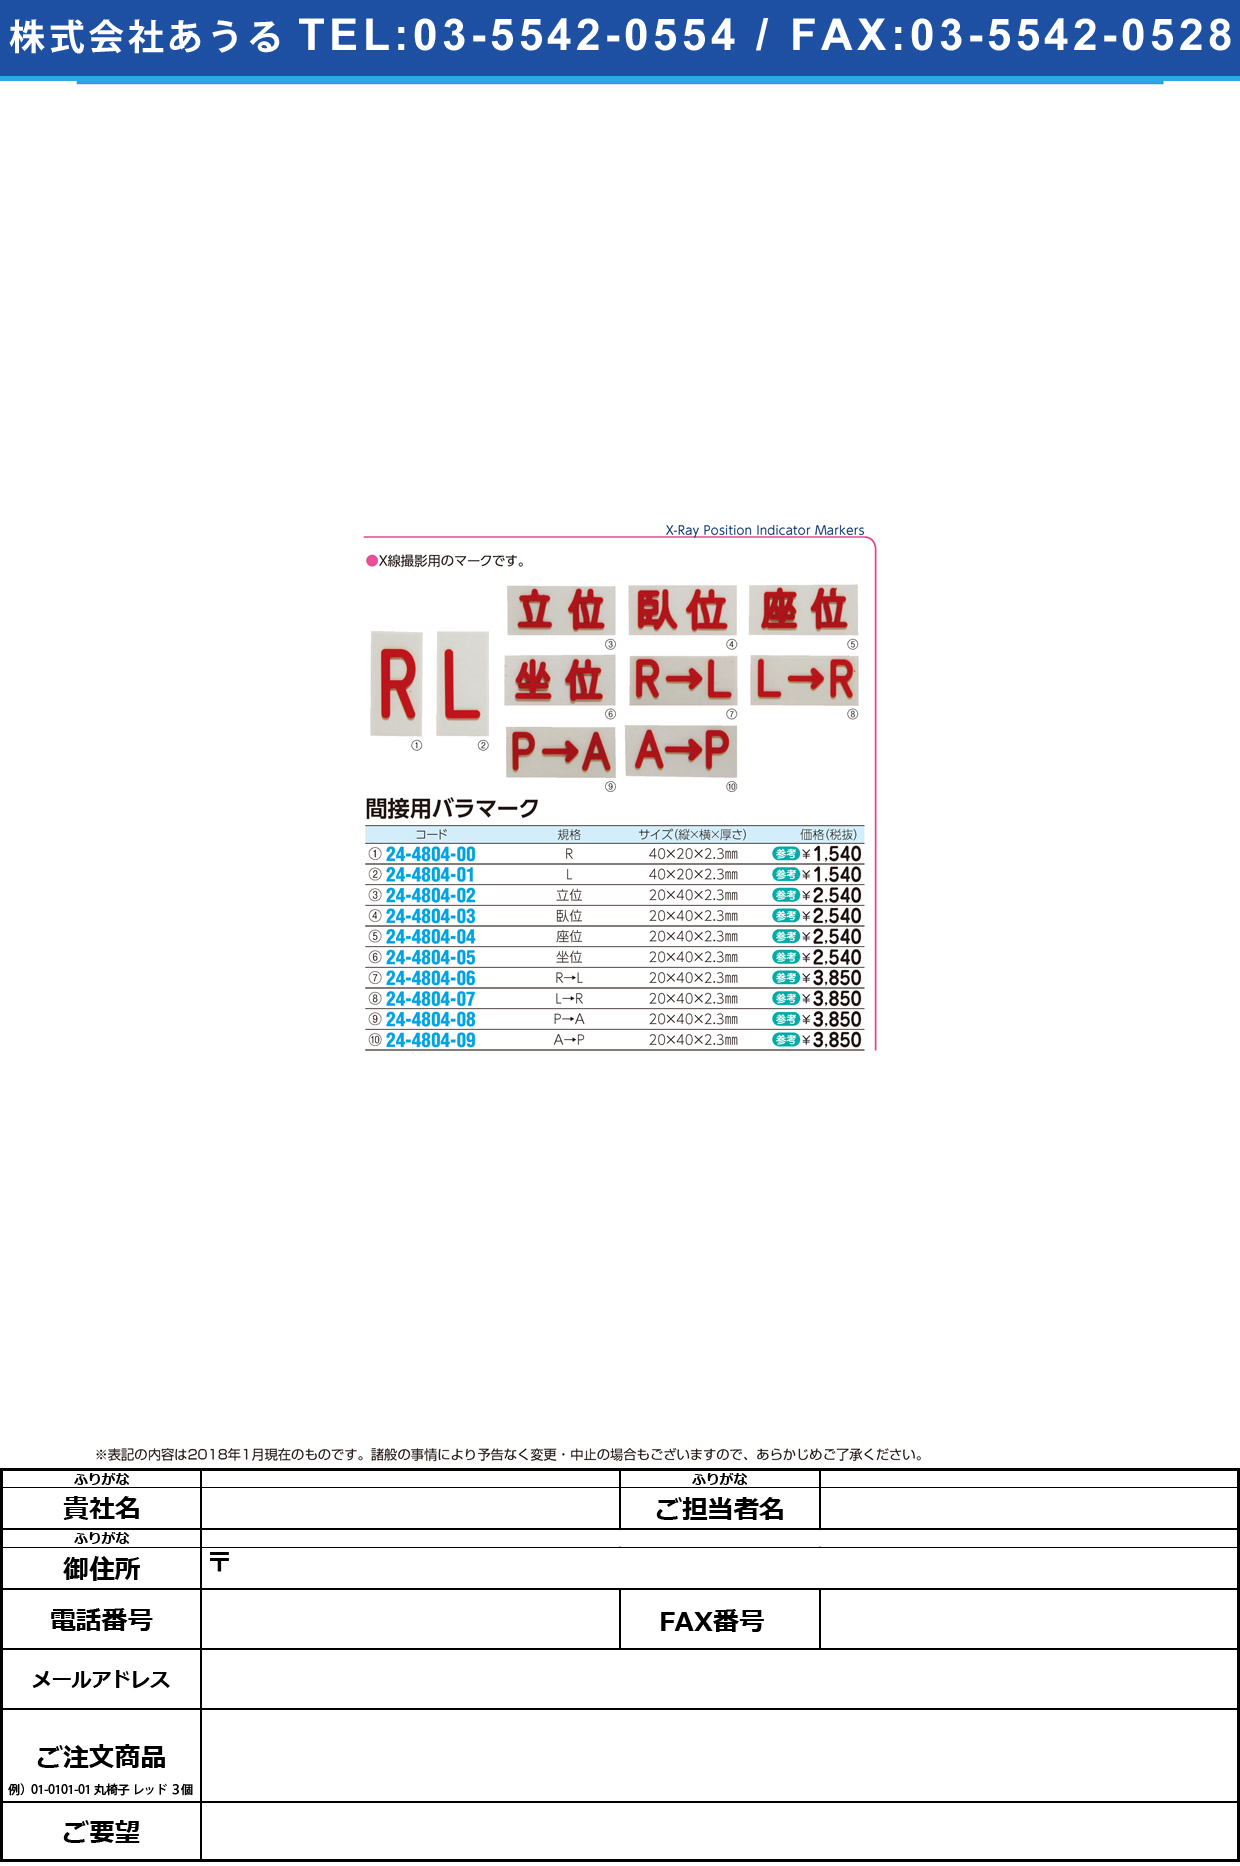 (24-4804-08)間接用バラマークＰ→Ａ 20X40X2.3MM ｶﾝｾﾂﾖｳﾊﾞﾗﾏｰｸ【1個単位】【2019年カタログ商品】